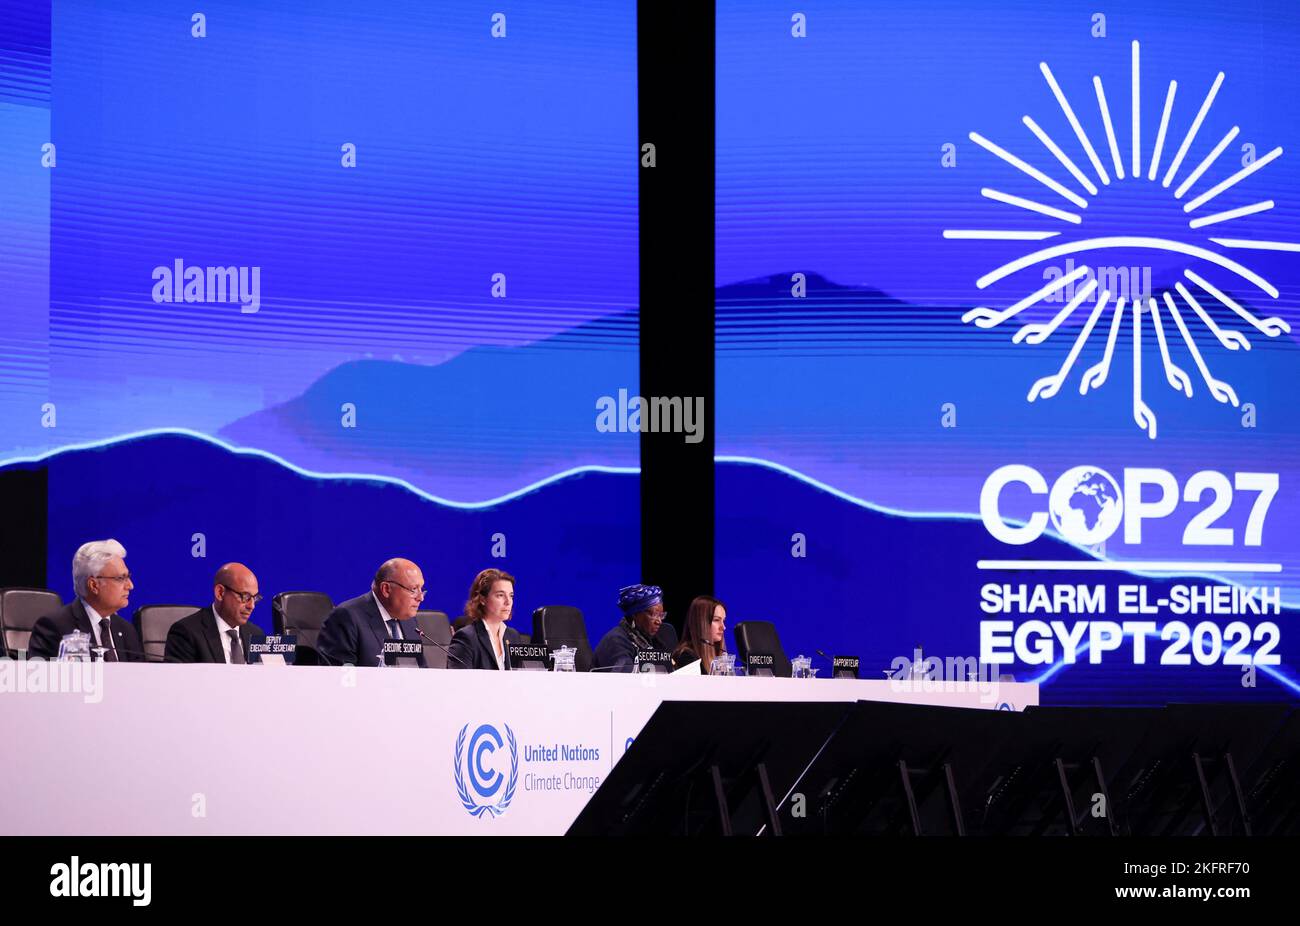 Los ministros pronuncian declaraciones durante la sesión plenaria de clausura de la cumbre climática del COP27 en Sharm el-Sheikh, Egipto, el 20 de noviembre de 2022, en el centro turístico del Mar Rojo. REUTERS/Mohamed Abd El Ghany Foto de stock